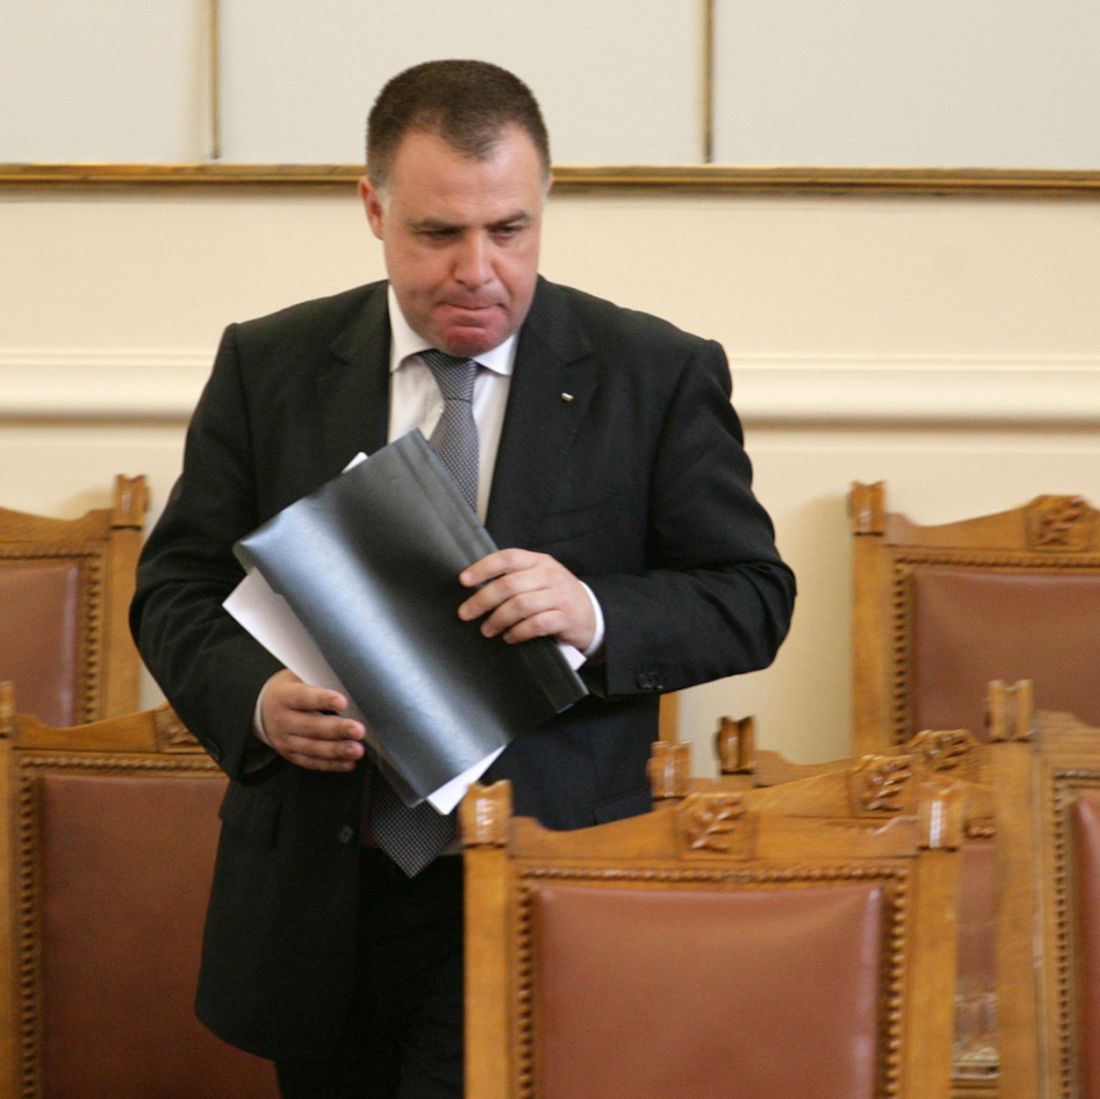 Идеята за хранителни банки бе спомената през април от земеделския министър Мирослав Найденов